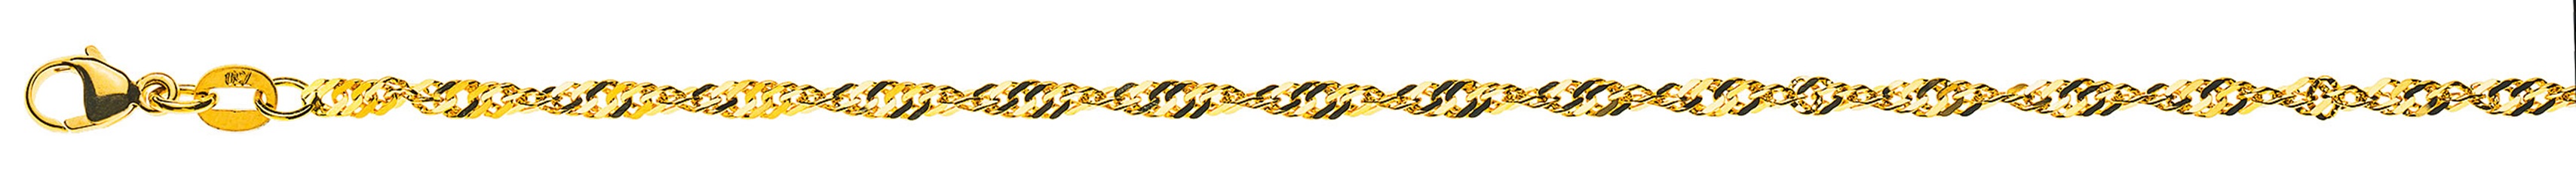 AURONOS Prestige Necklace Yellow Gold 18K Singapore Chain 40cm 2.4mm